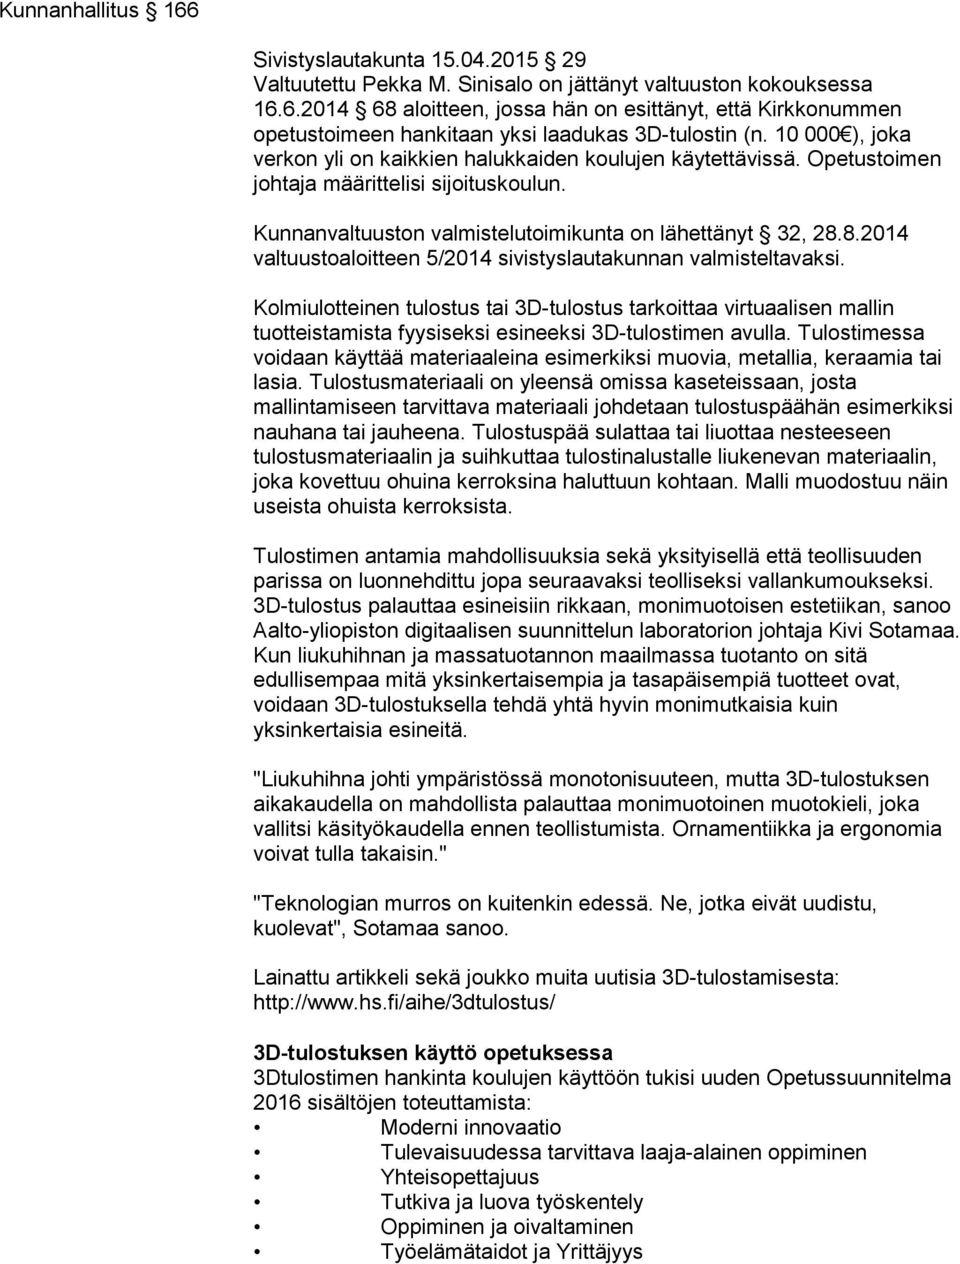 8.2014 valtuustoaloitteen 5/2014 sivistyslautakunnan valmisteltavaksi.